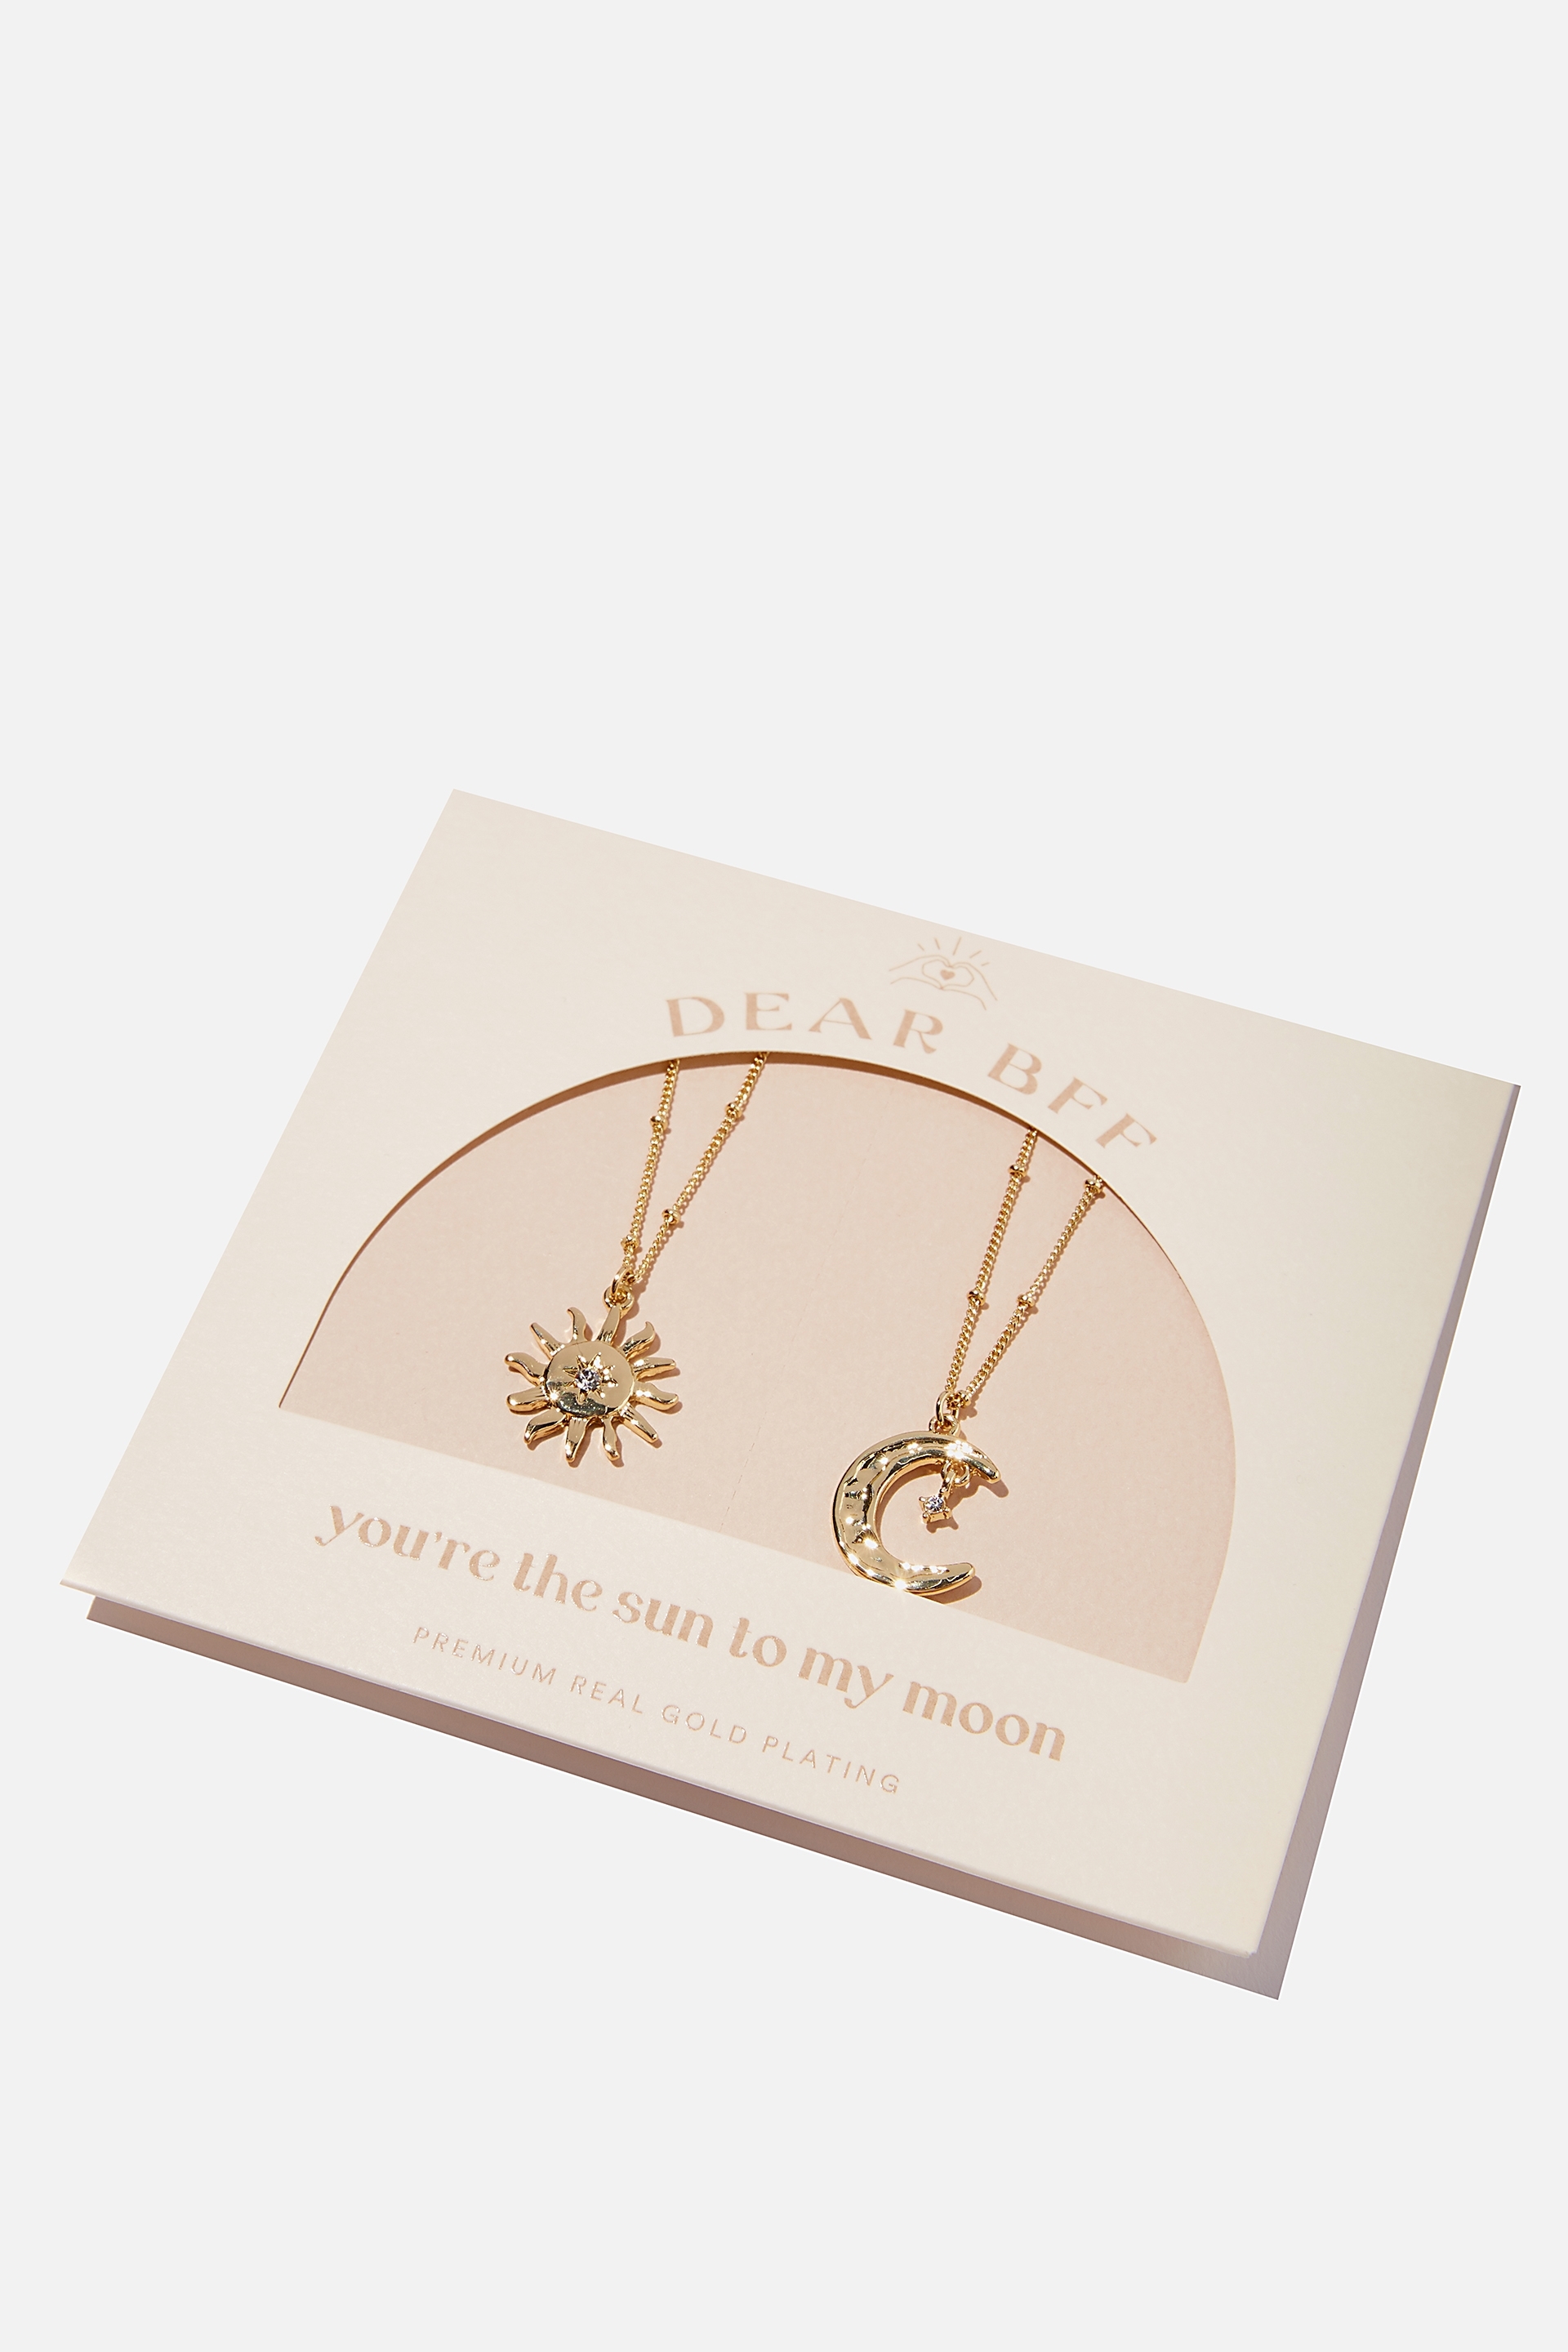 Rubi - Dear Bff 2Pk Necklace - Gold plated sun & moon